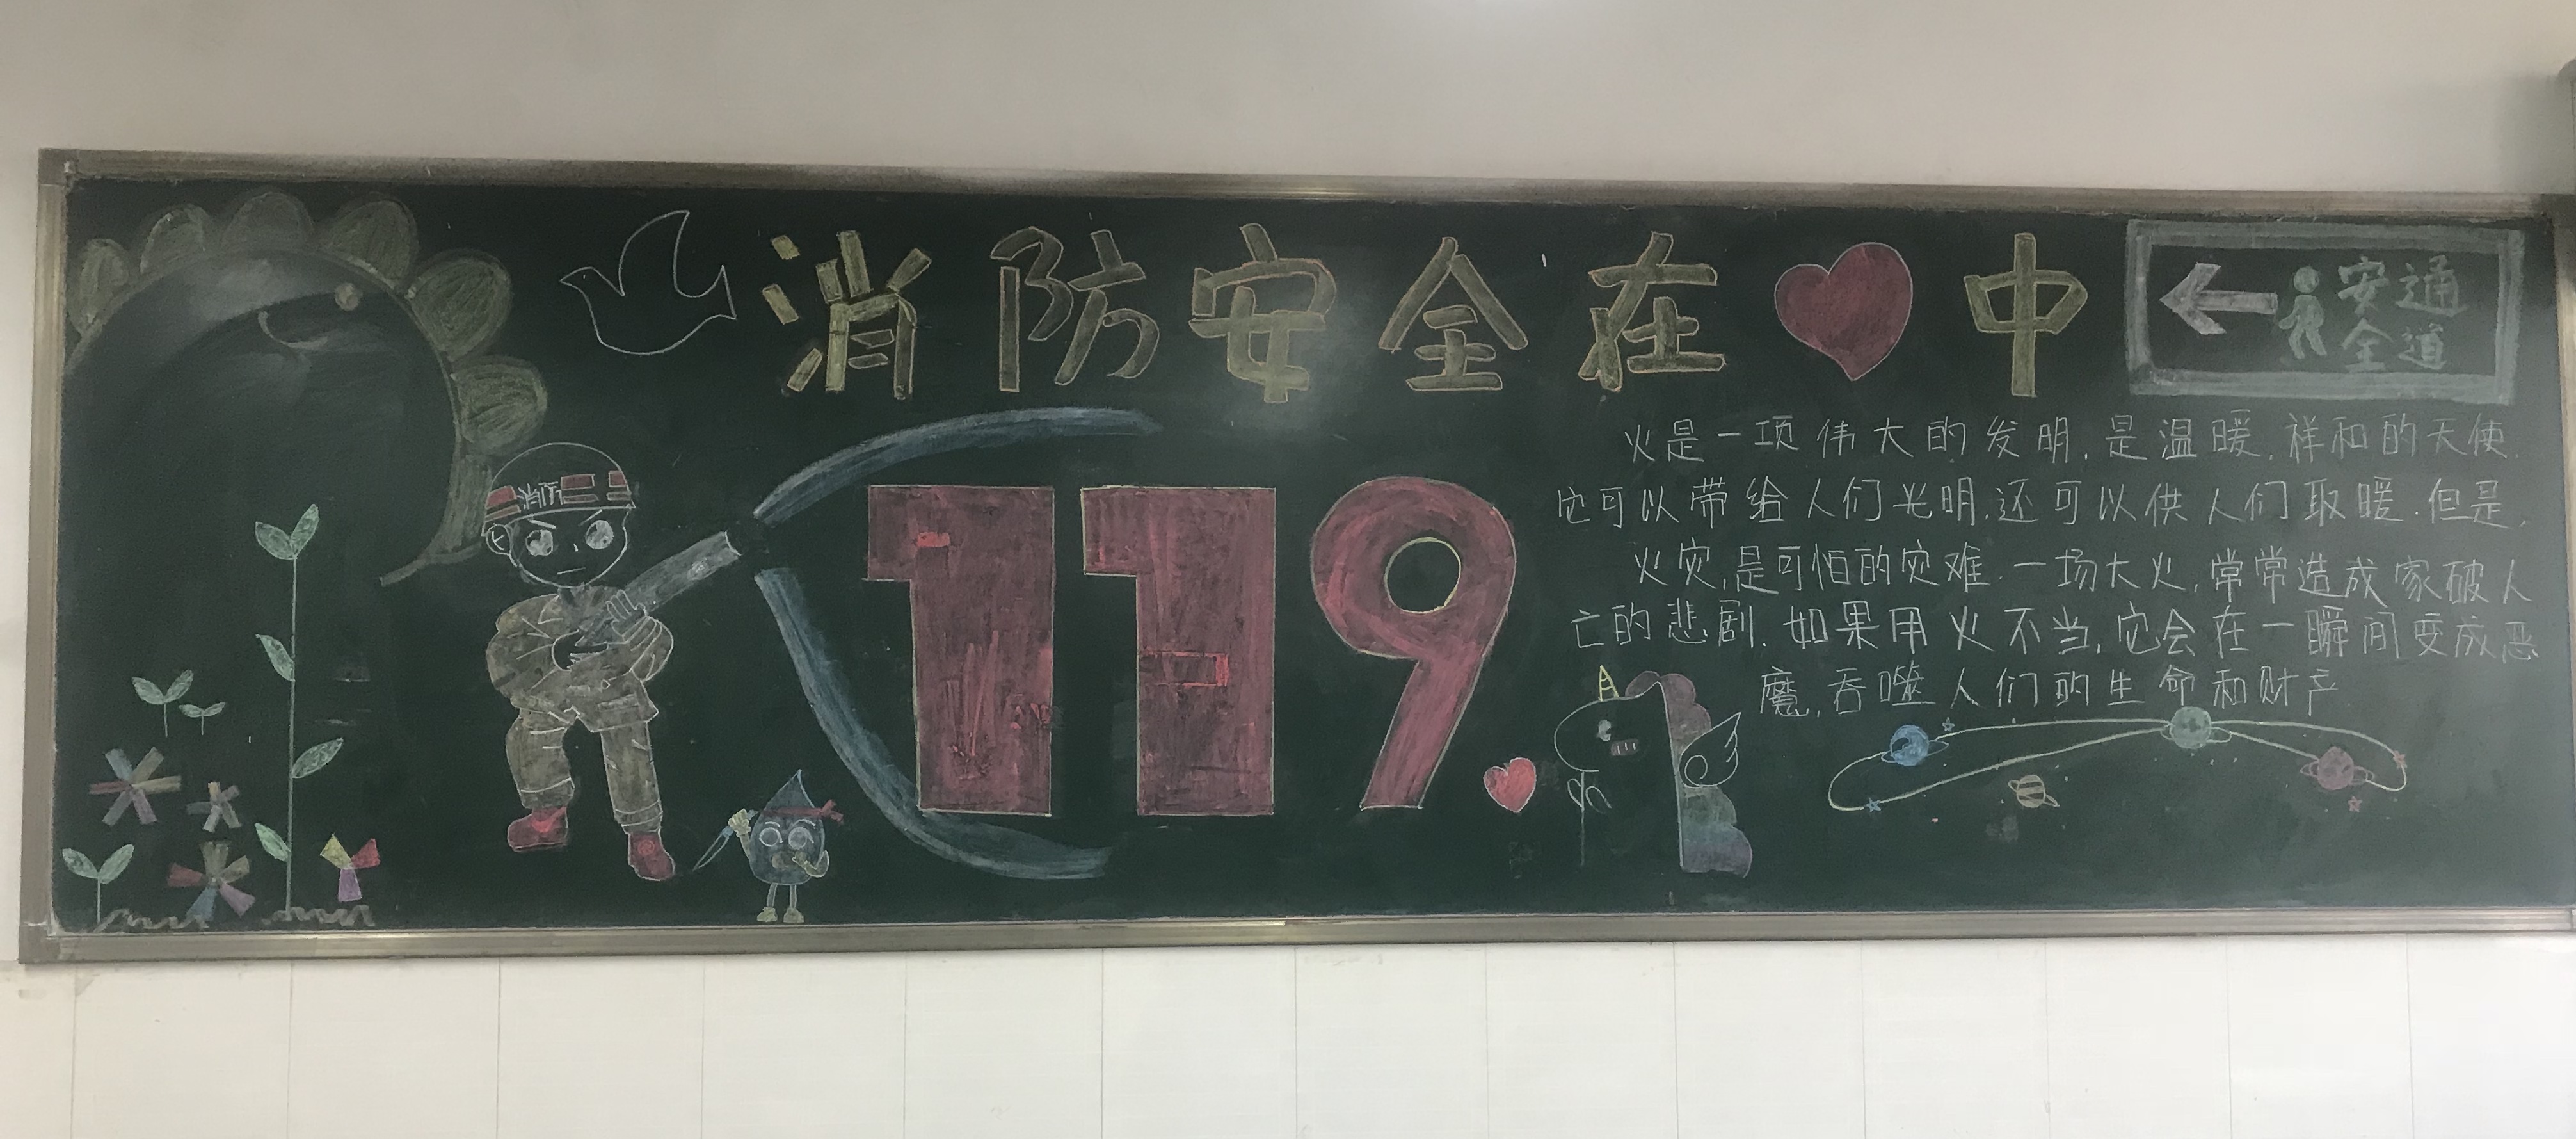 郑州市第107初级中学举行"消防安全在我心"黑板报评展活动